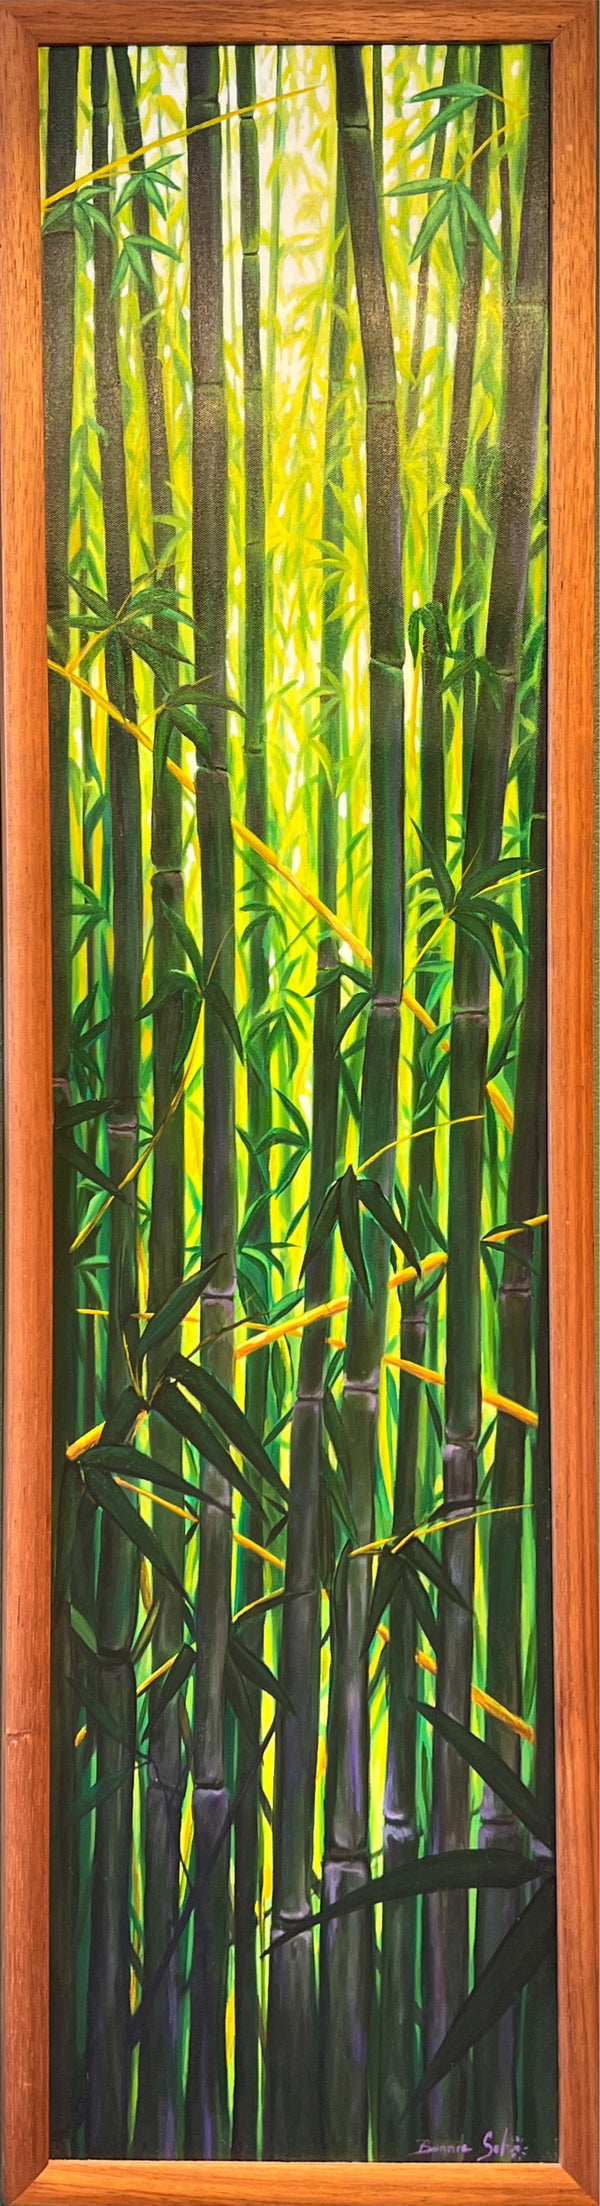 "Bamboo" - Bonnie Sol